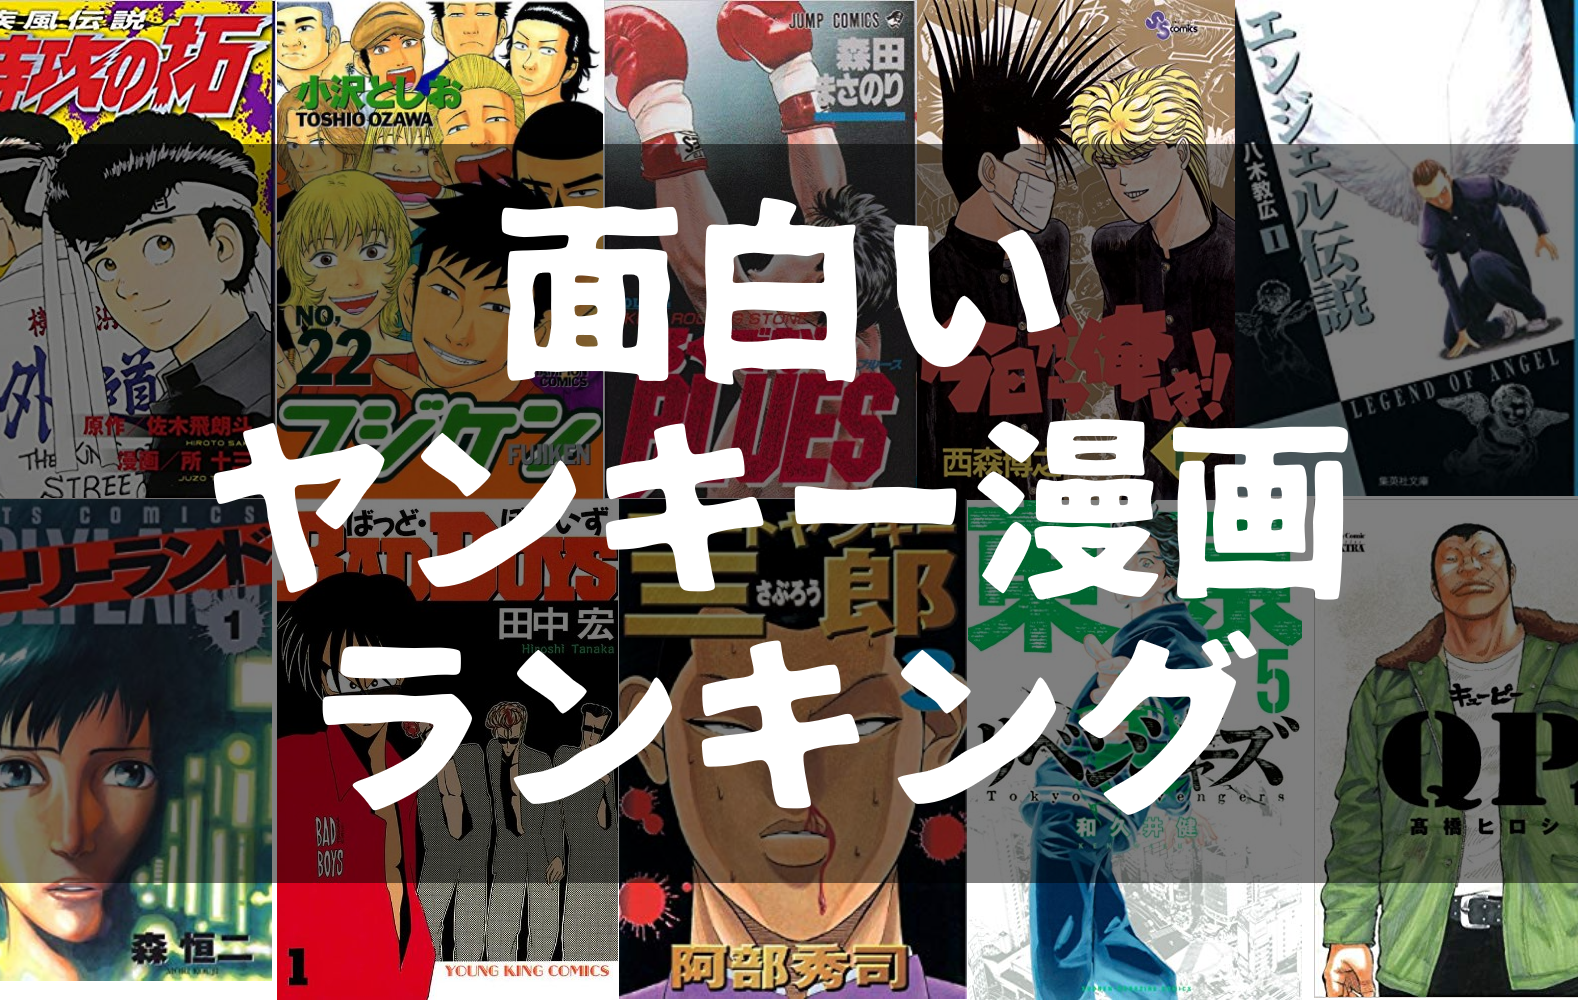 不良 最強のヤンキー漫画ランキングベスト14 広島 千葉 東京舞台で現実リンクも ぱつログ Hmp2blog